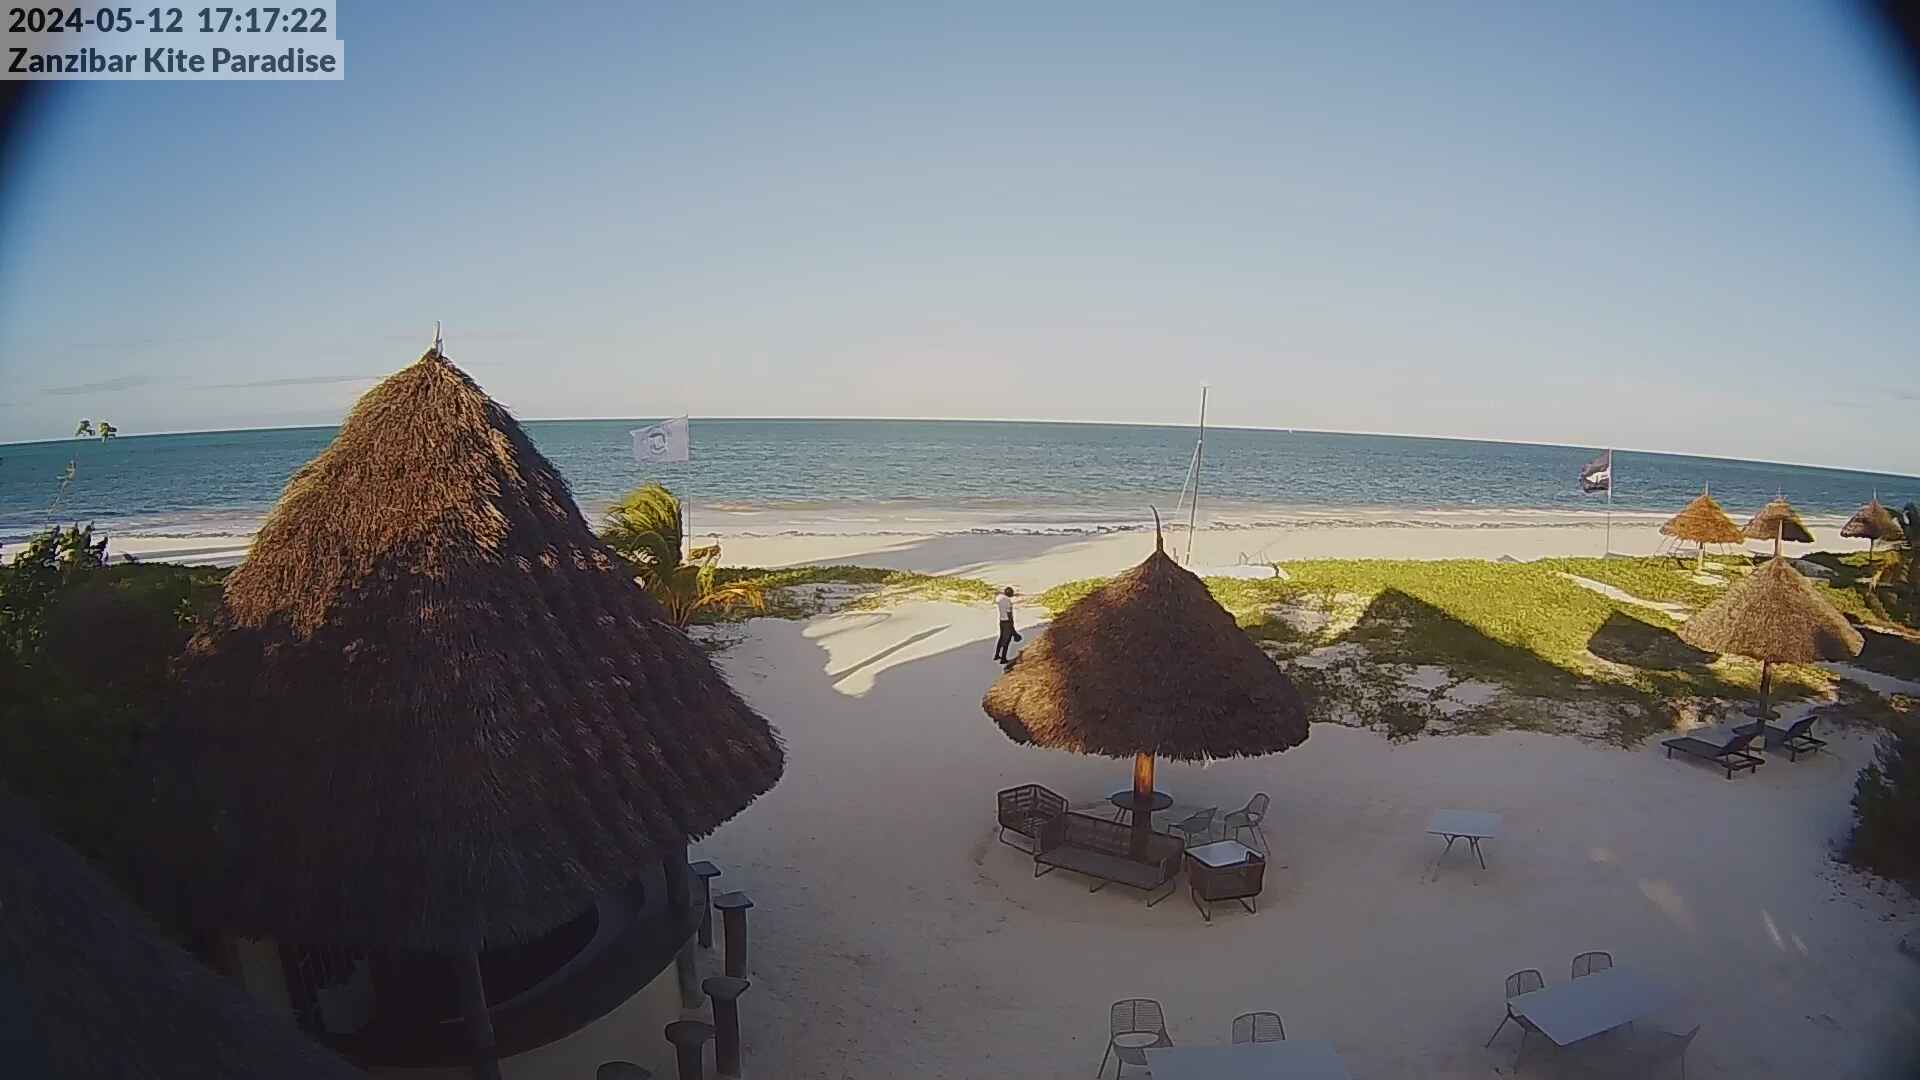 Paje Beach (Zanzibar) Ma. 17:17